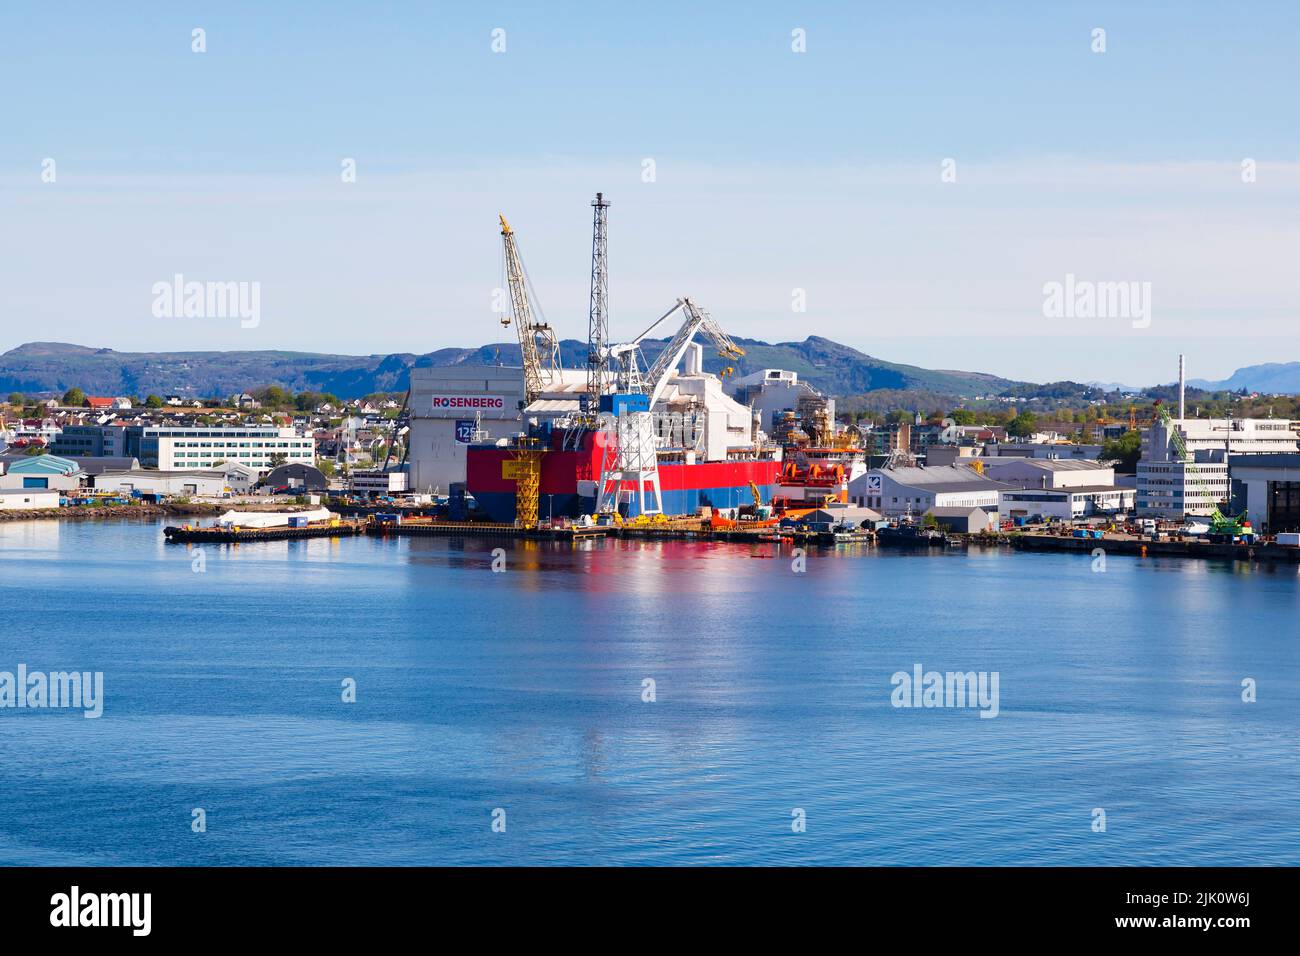 Worley Rosenberg et les chantiers navals de GMC et les quais secs avec des navires en cours de réparation. Stavanger, Norvège Banque D'Images